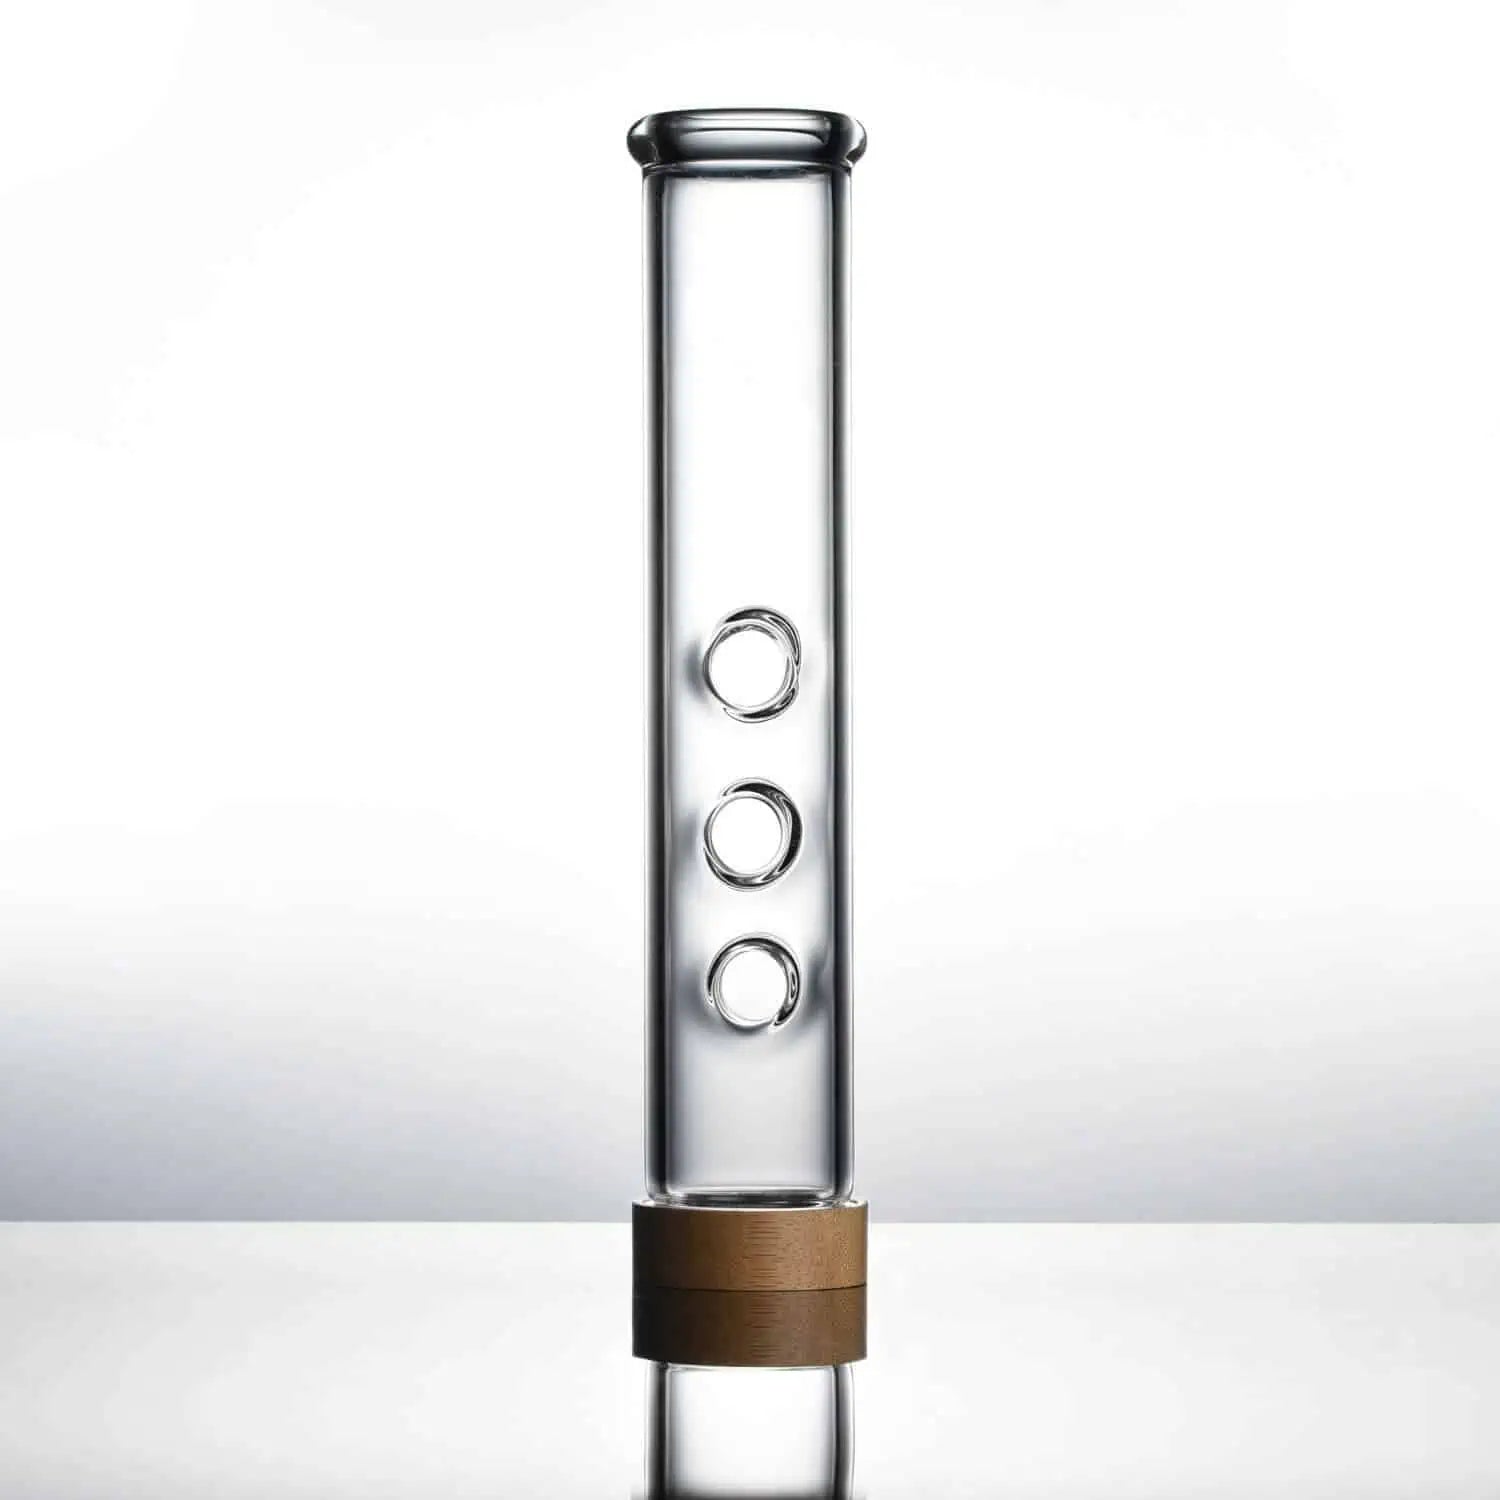 18" Origin Bong - VITAE Glass